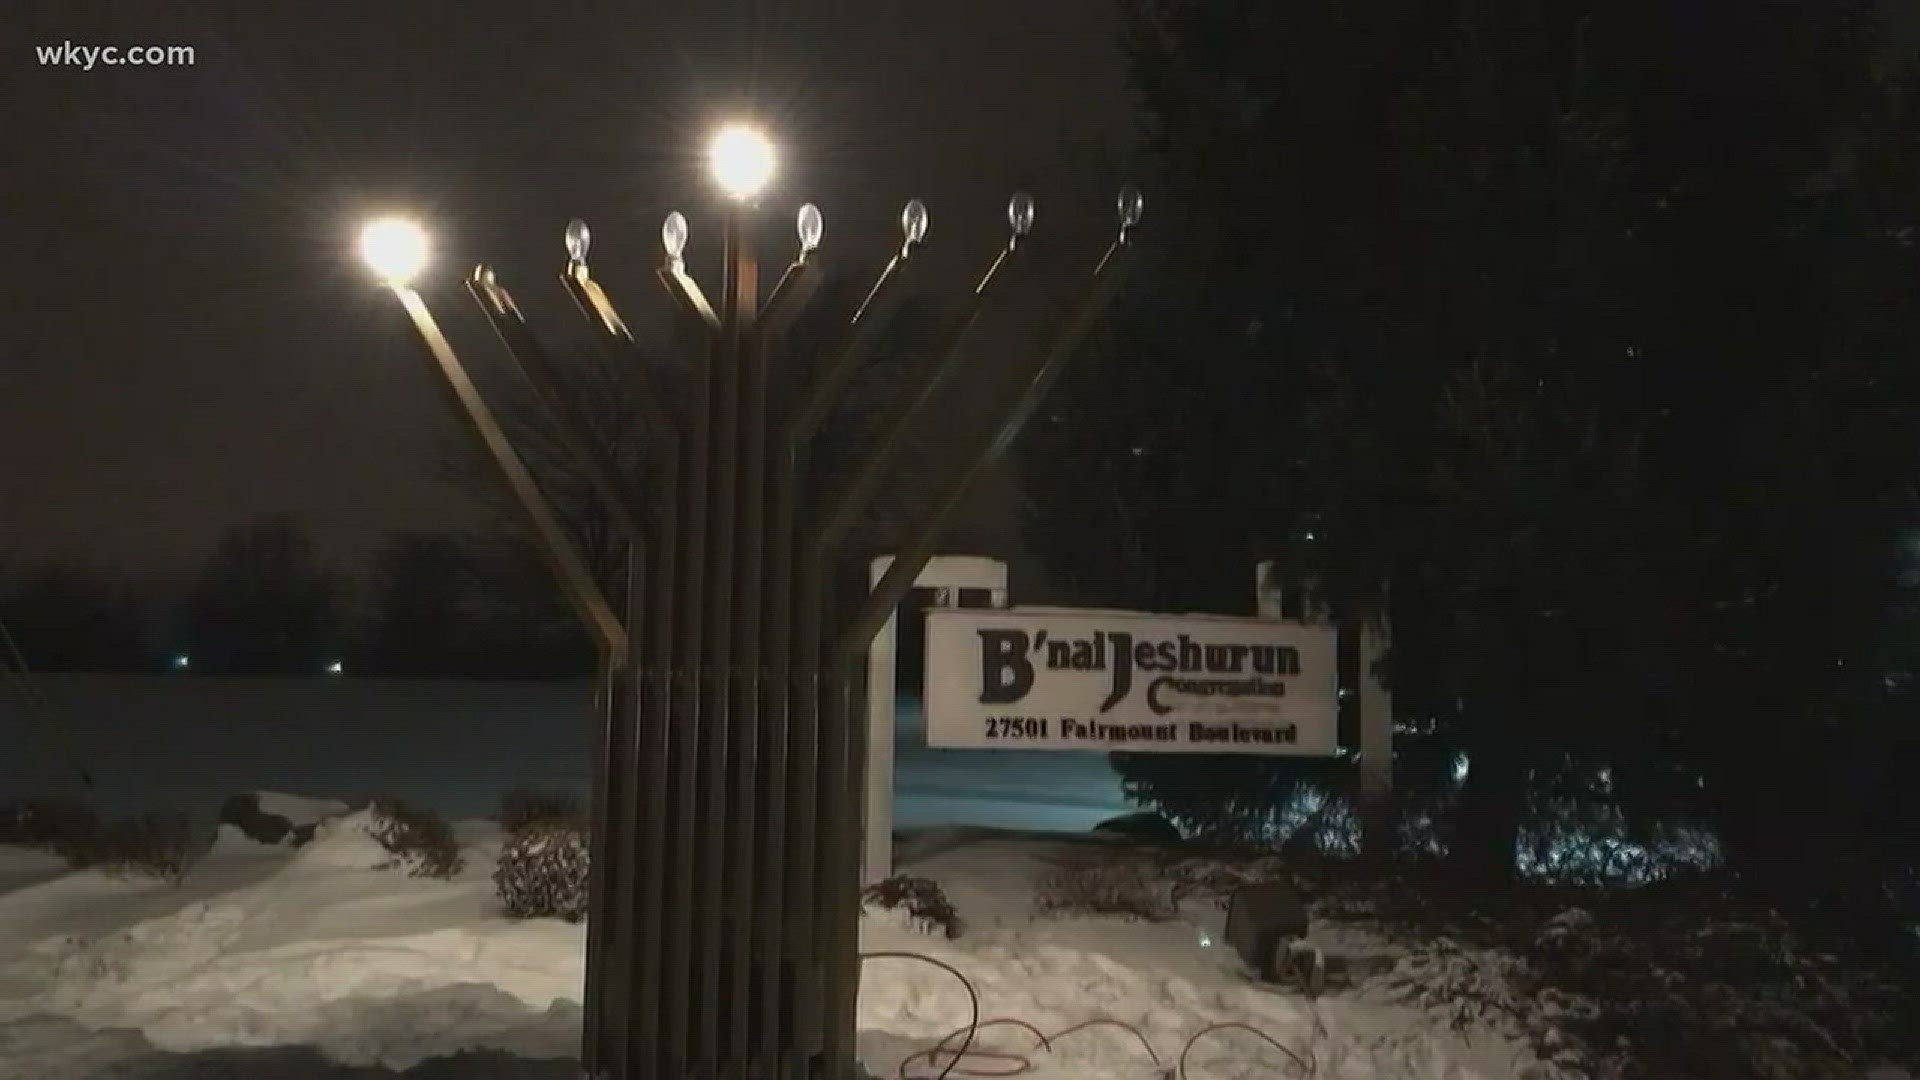 Hanukkah now underway, 1st candle lit at B'nai Jeshurun Congregation